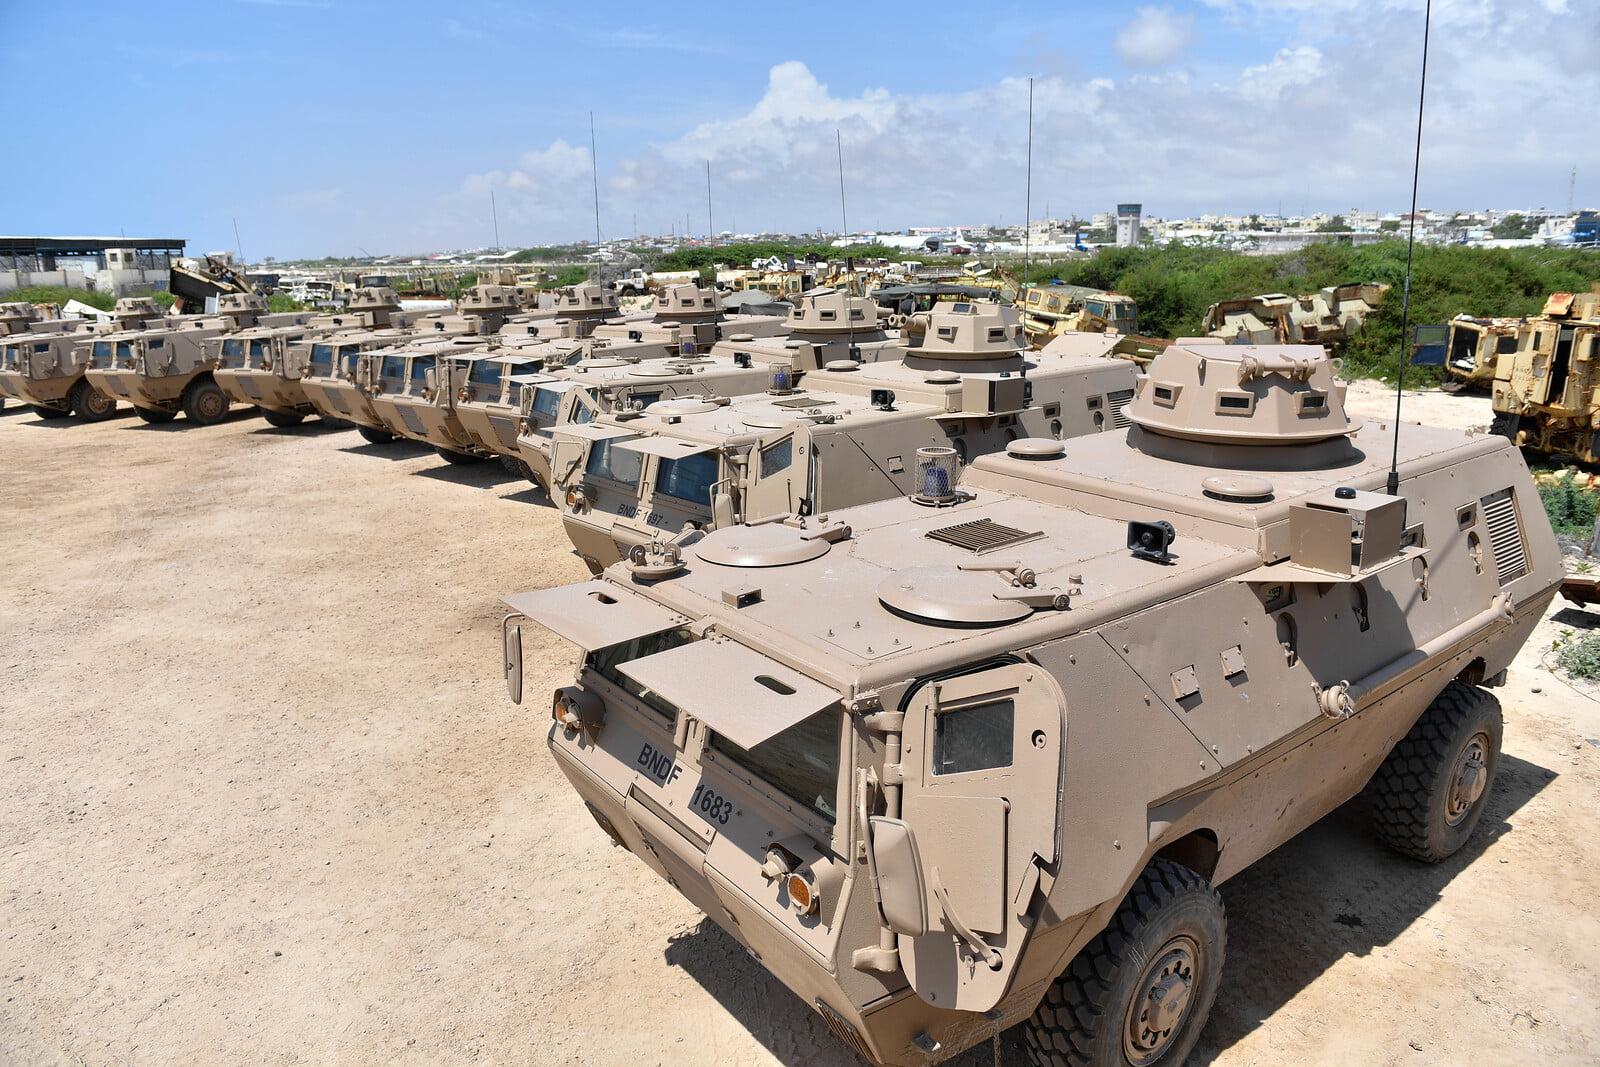 فرنسا تشتري 16 مدرعة من طراز فهد المصرية الصنع لتعزيز قدراتها العسكرية – البوكس نيوز